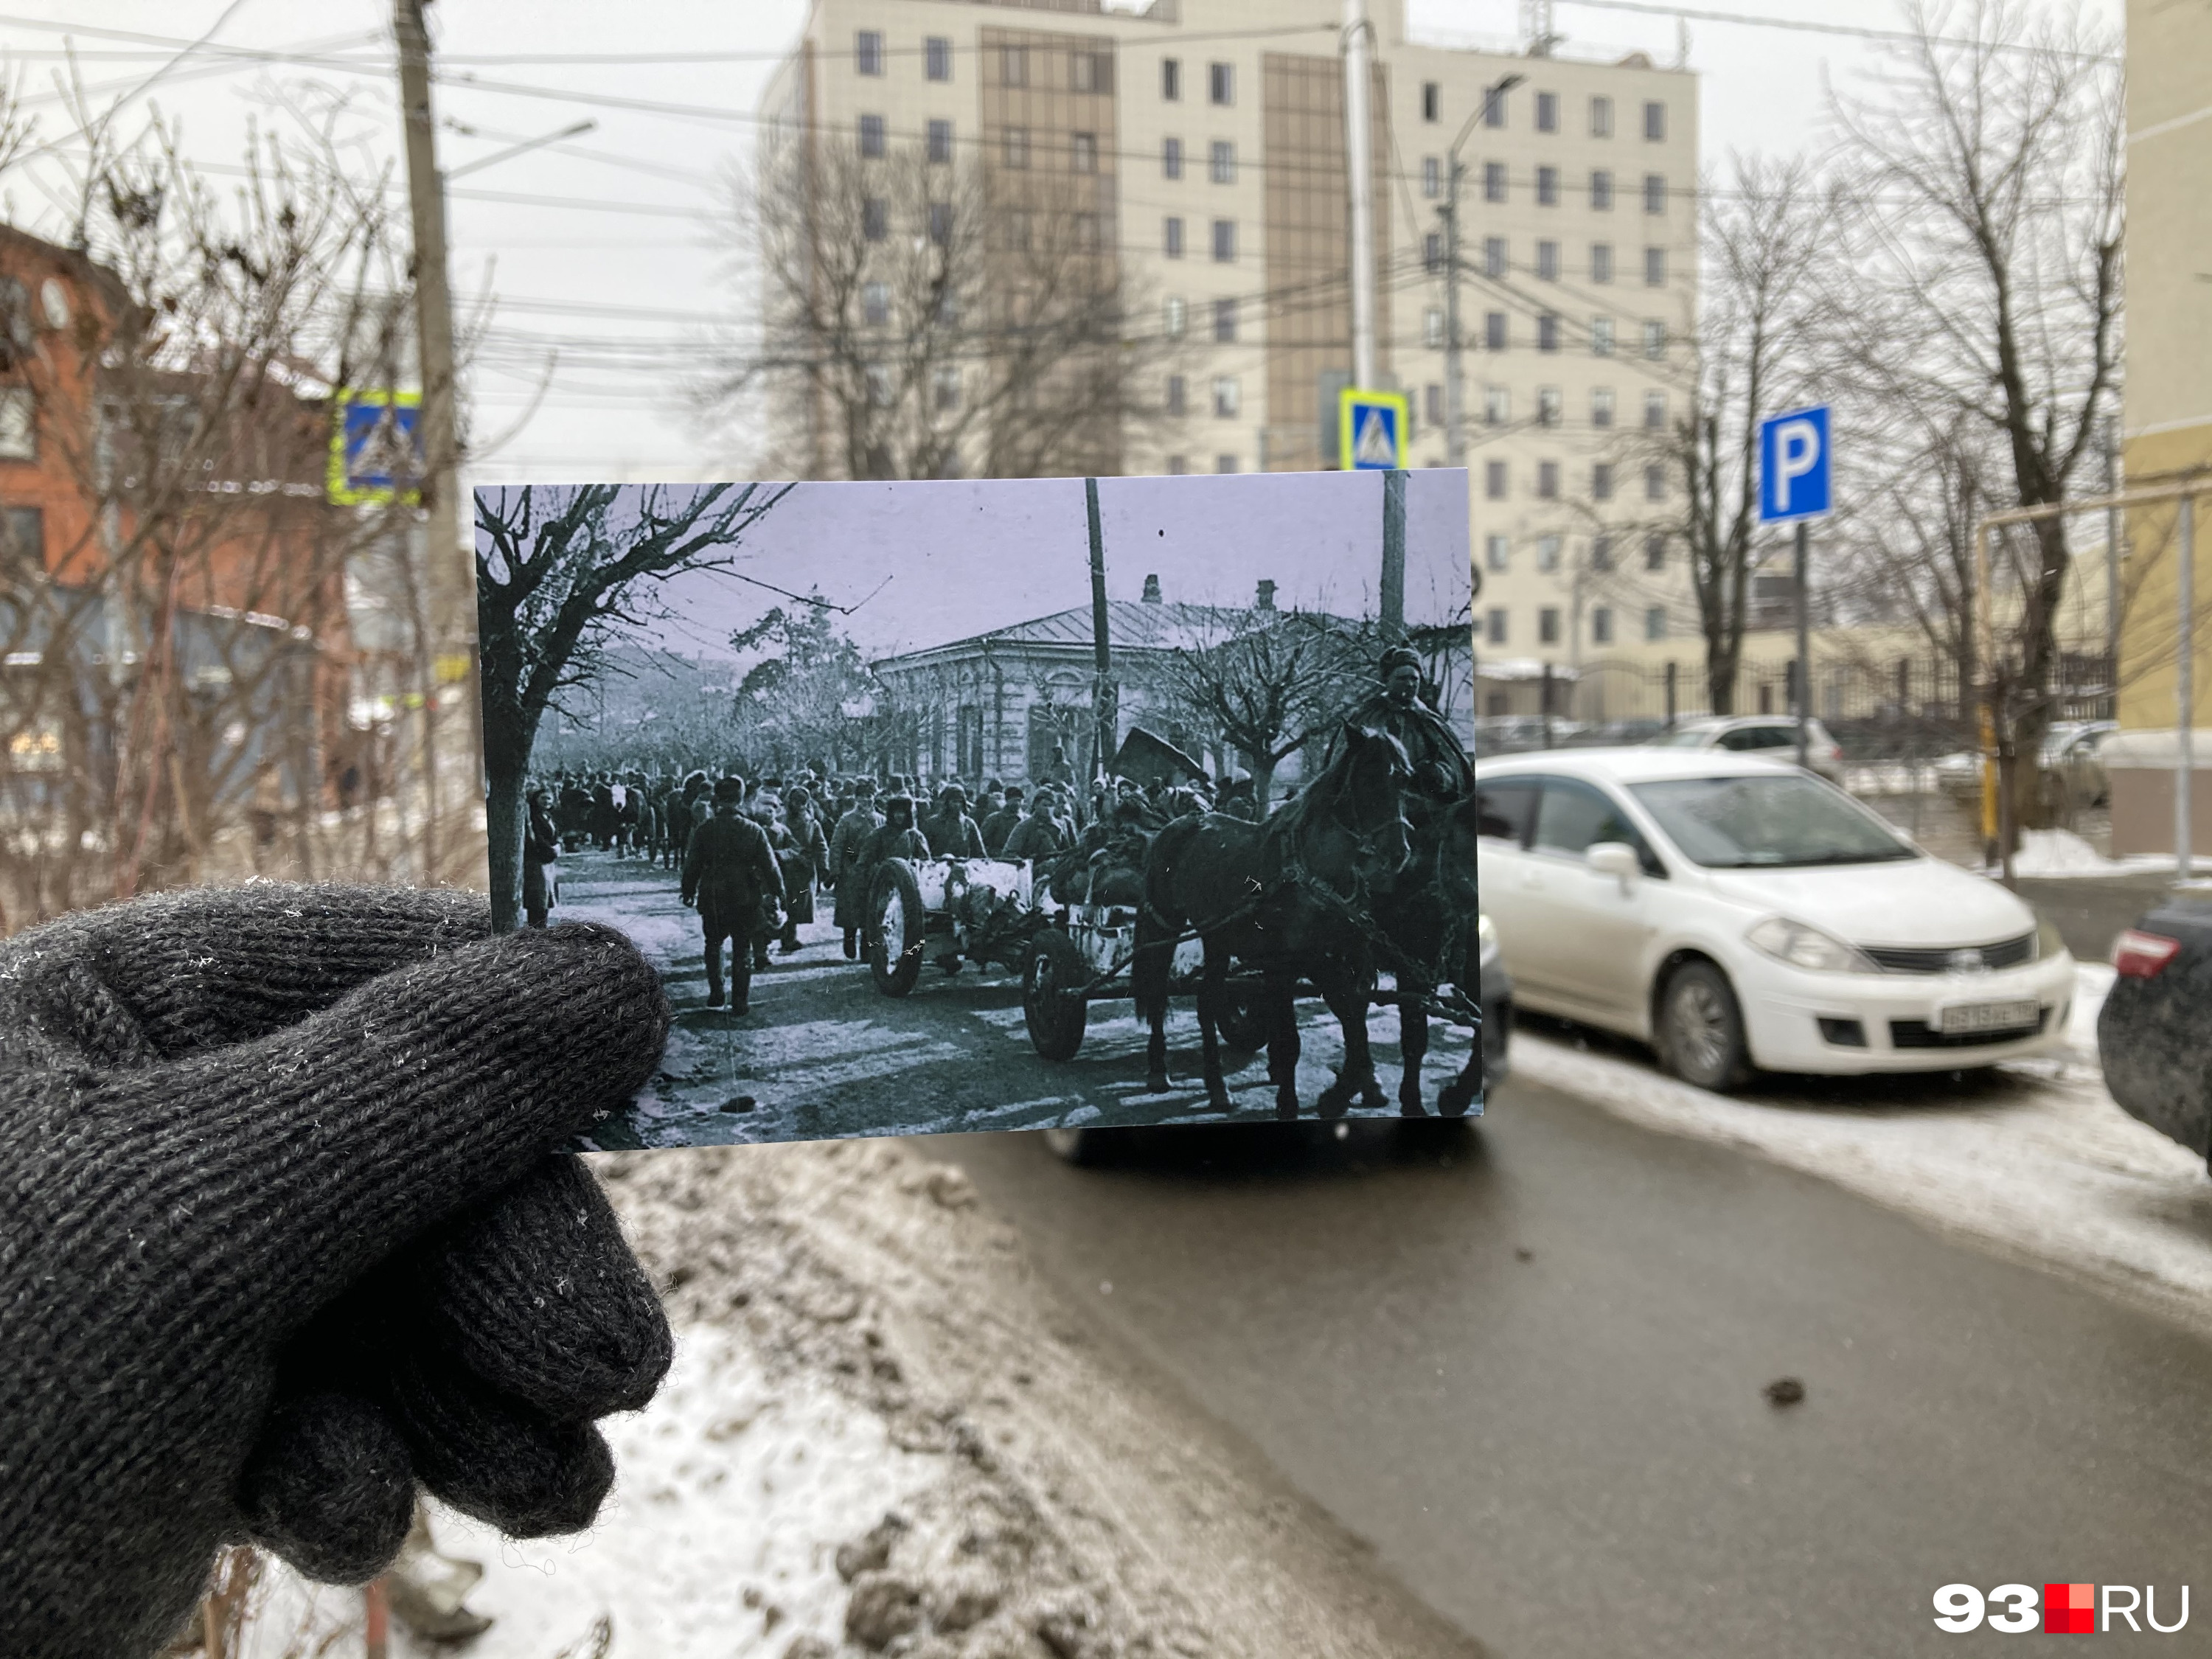 Перекресток улиц Октябрьской и Свердлова (сейчас Карасунской), колонна советских войск движется со стороны Красной в сторону Кубано-Набережной